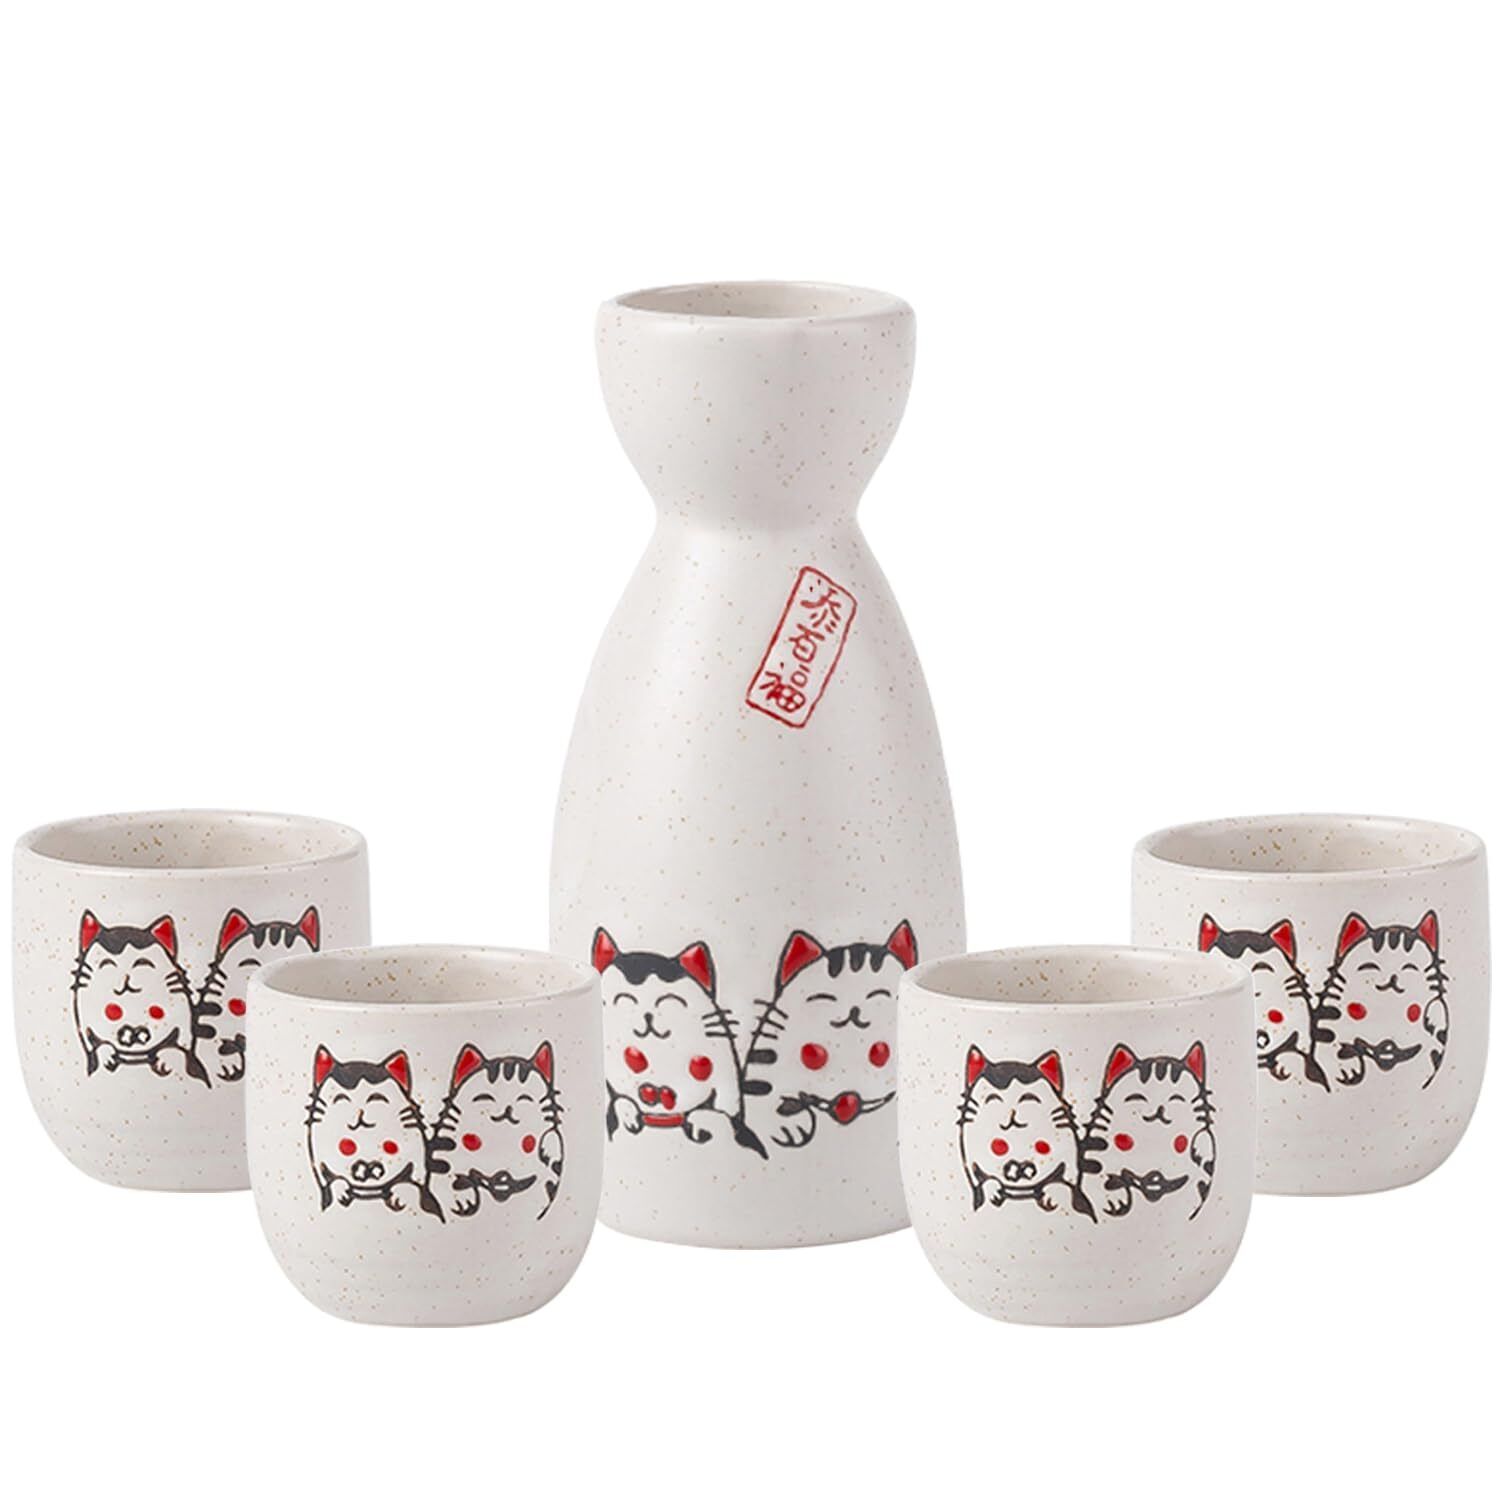 5 Pieces Sake Set 200ml Sake Pot 50ml Sake Cup Set Japanese Traditional Hand ...